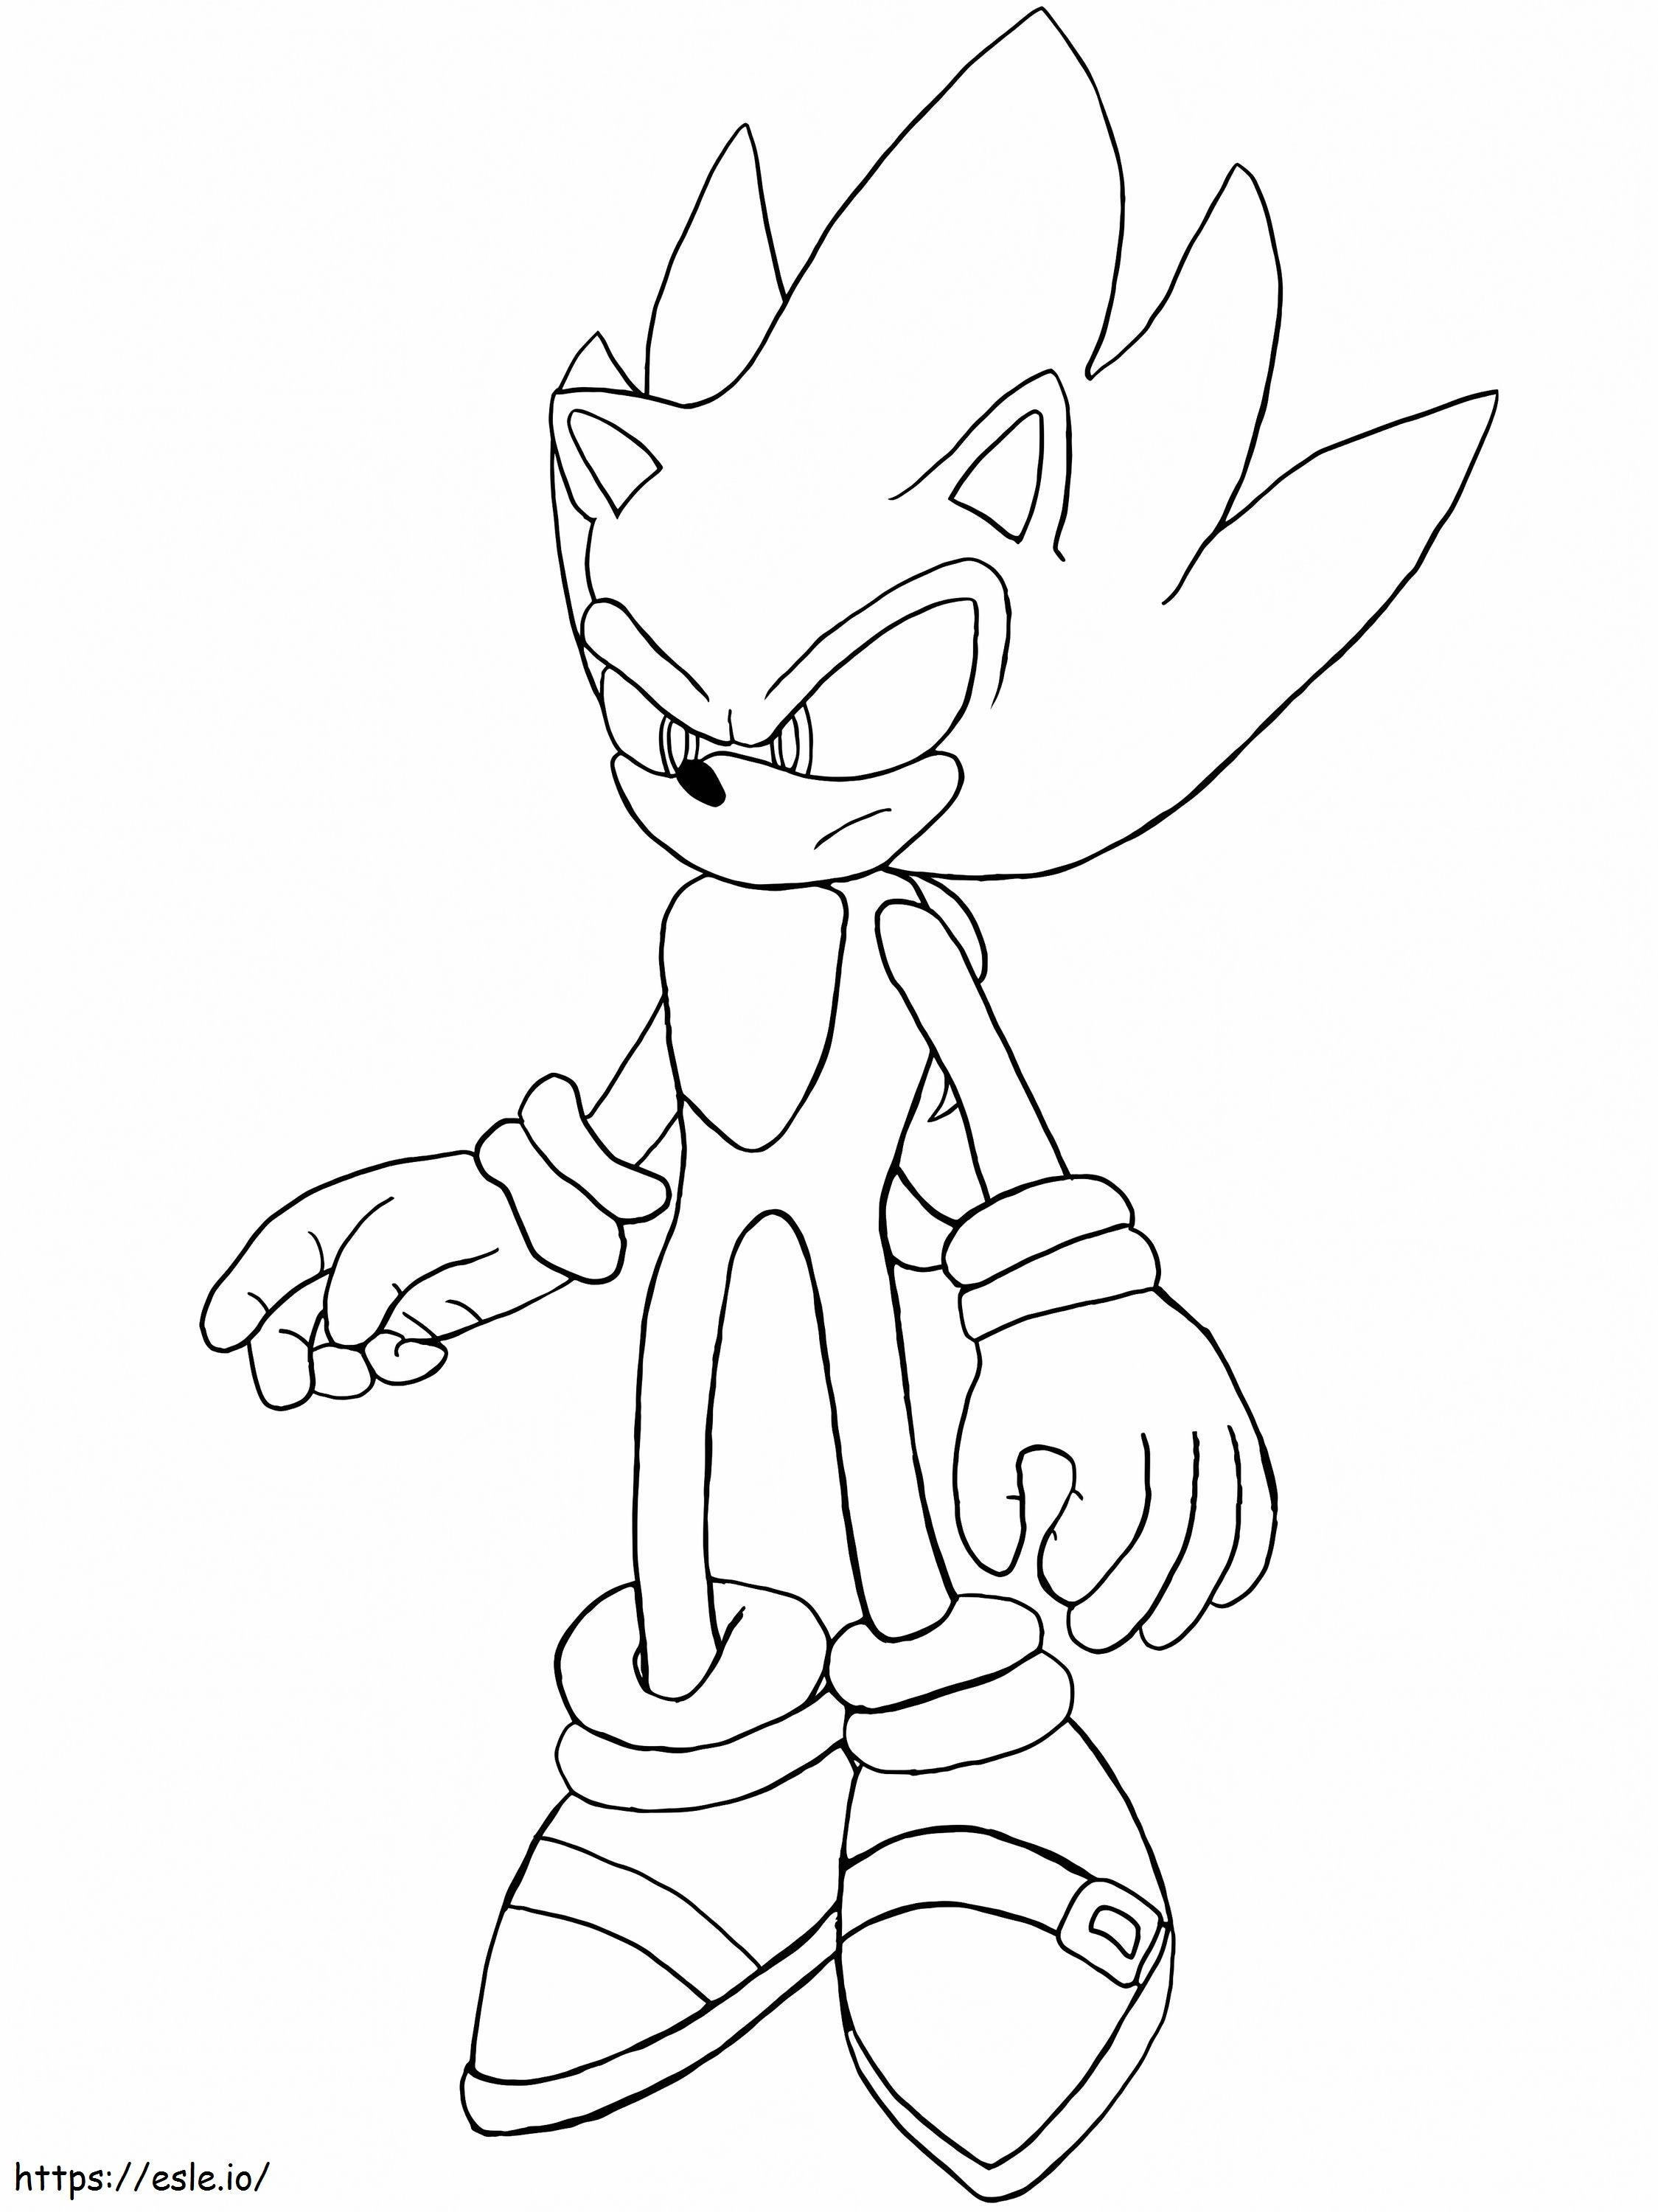 Sonic arrabbiato da colorare